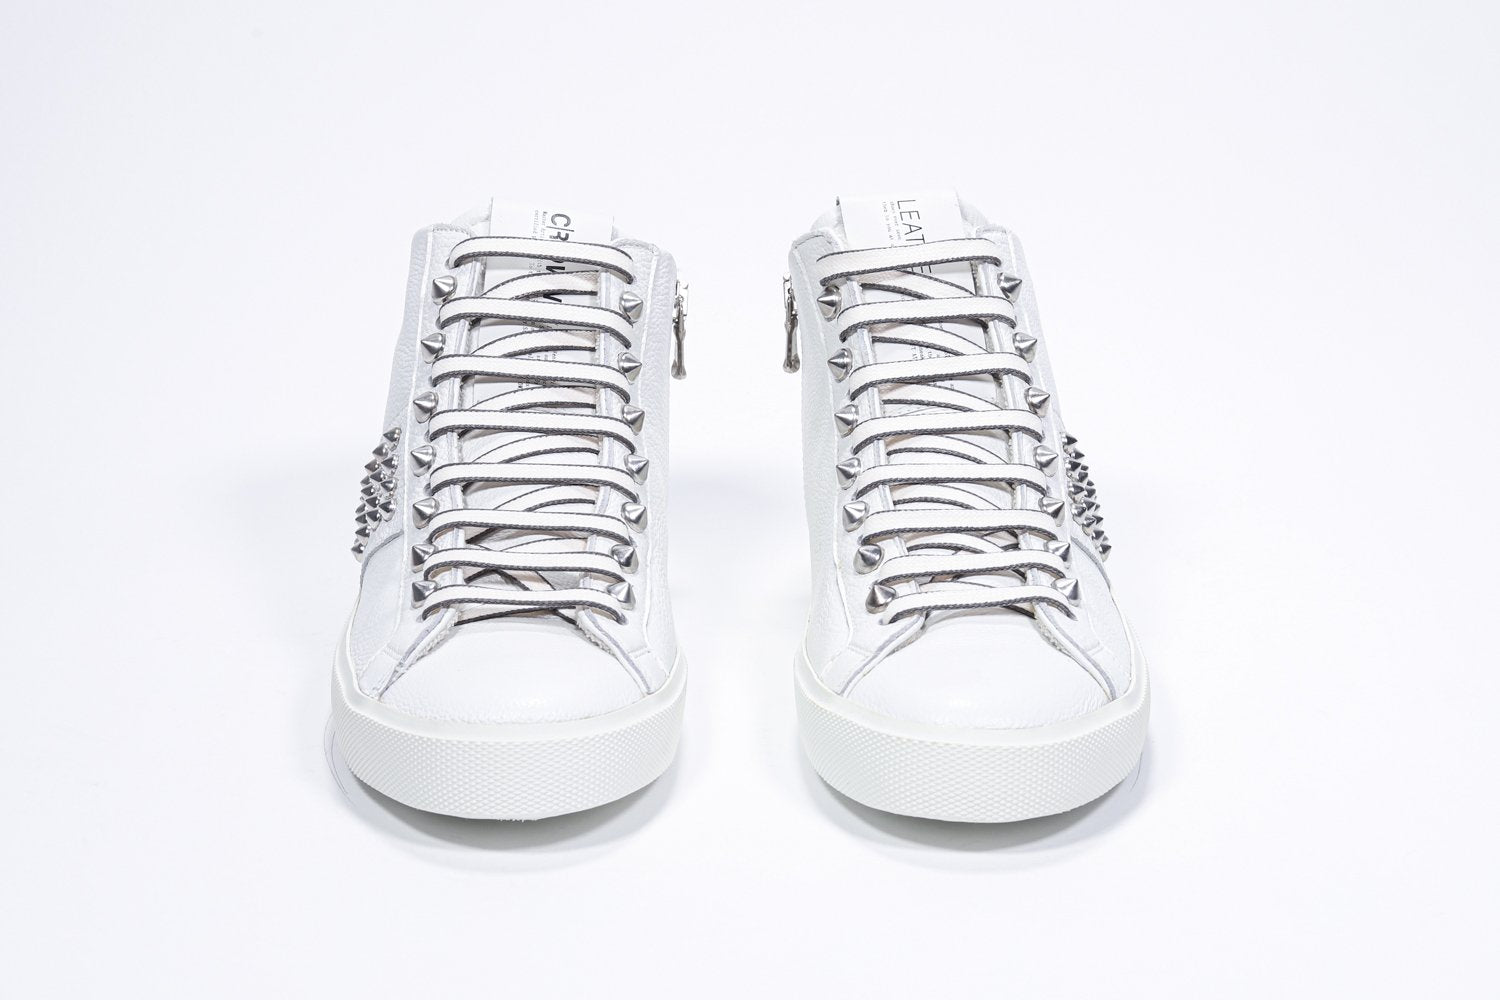 Vue de face de la chaussure blanche de taille moyenne sneaker. Tige en cuir avec clous, fermeture à glissière intérieure et semelle en caoutchouc blanc.